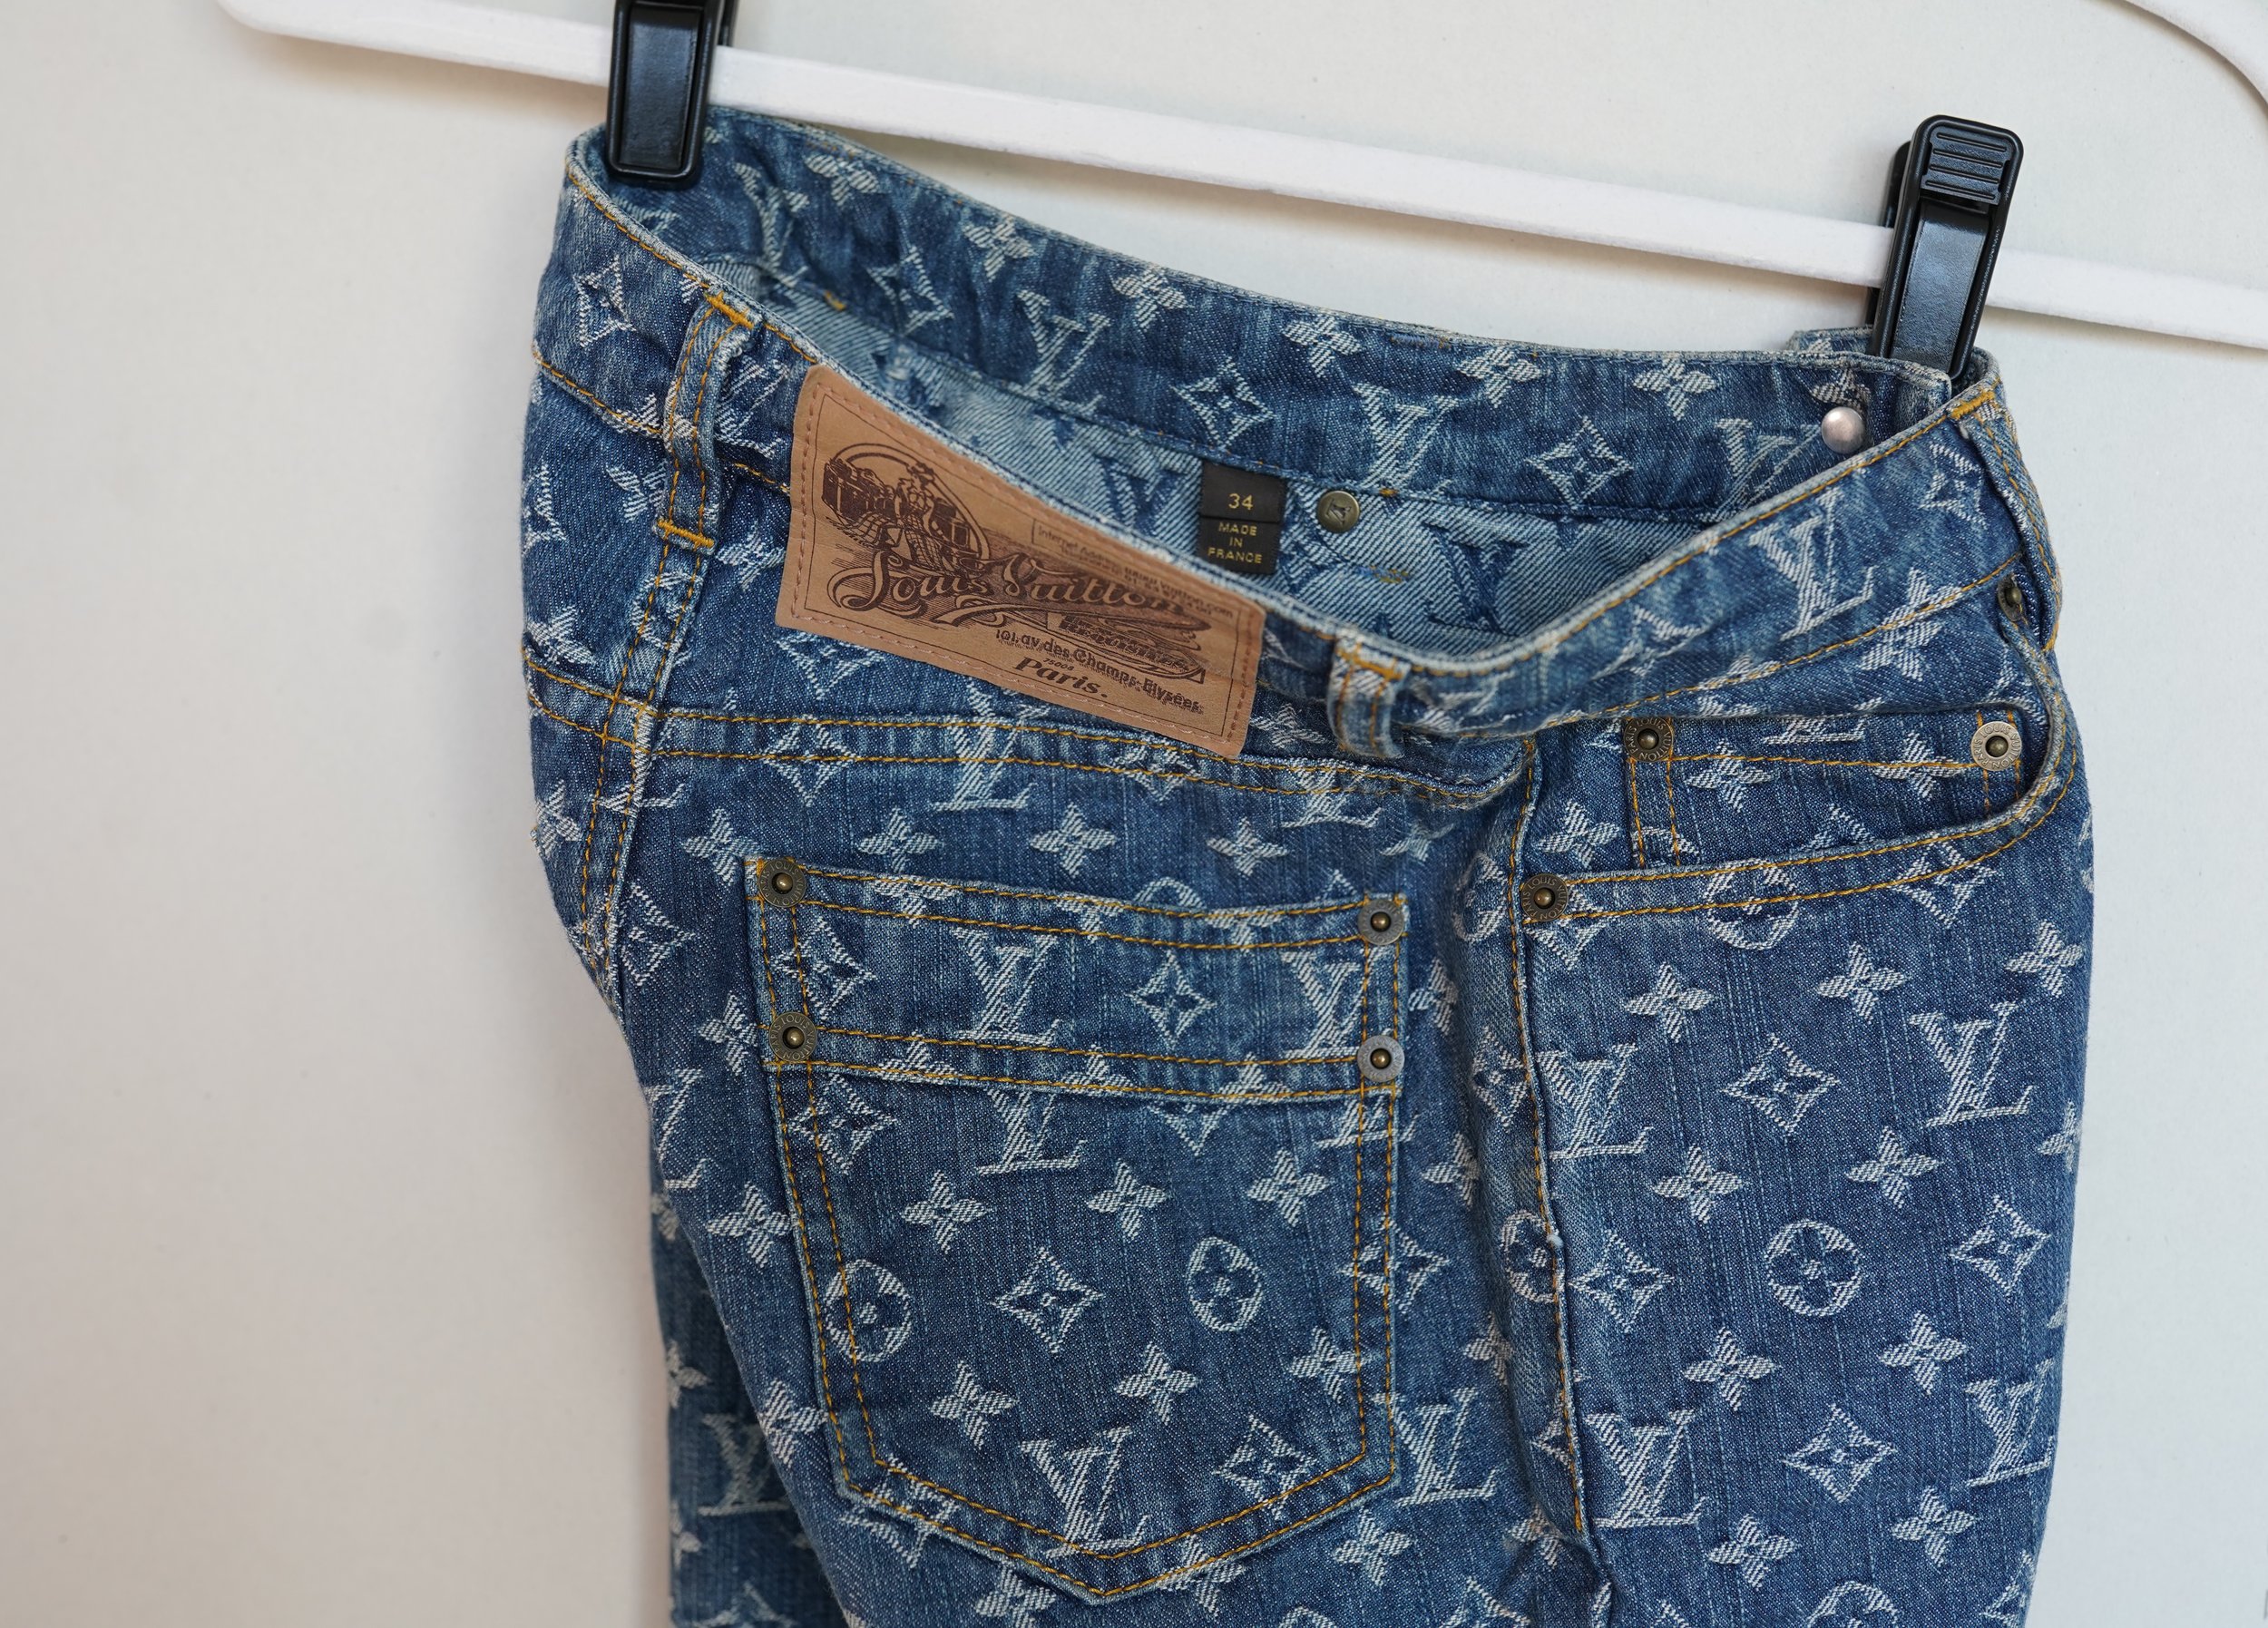 Louis Vuitton Jeans — Sonya Esman